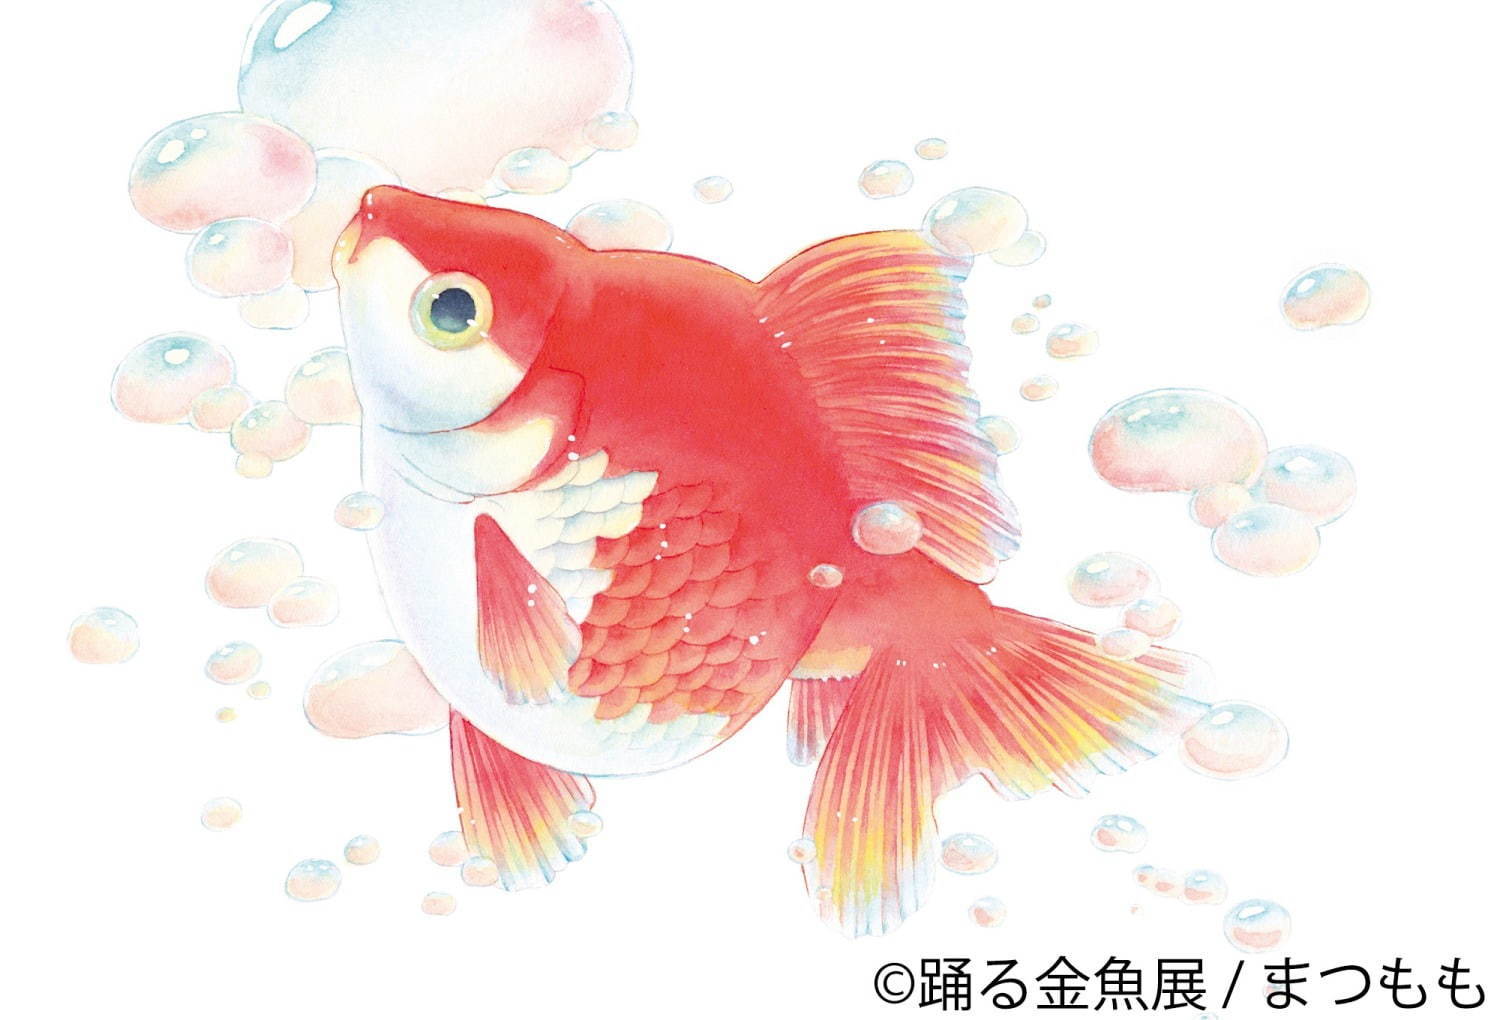 写真6 29 金魚の写真 イラスト展 踊る金魚展 東京 名古屋で ガラスアクセサリーなどグッズ販売も ファッションプレス